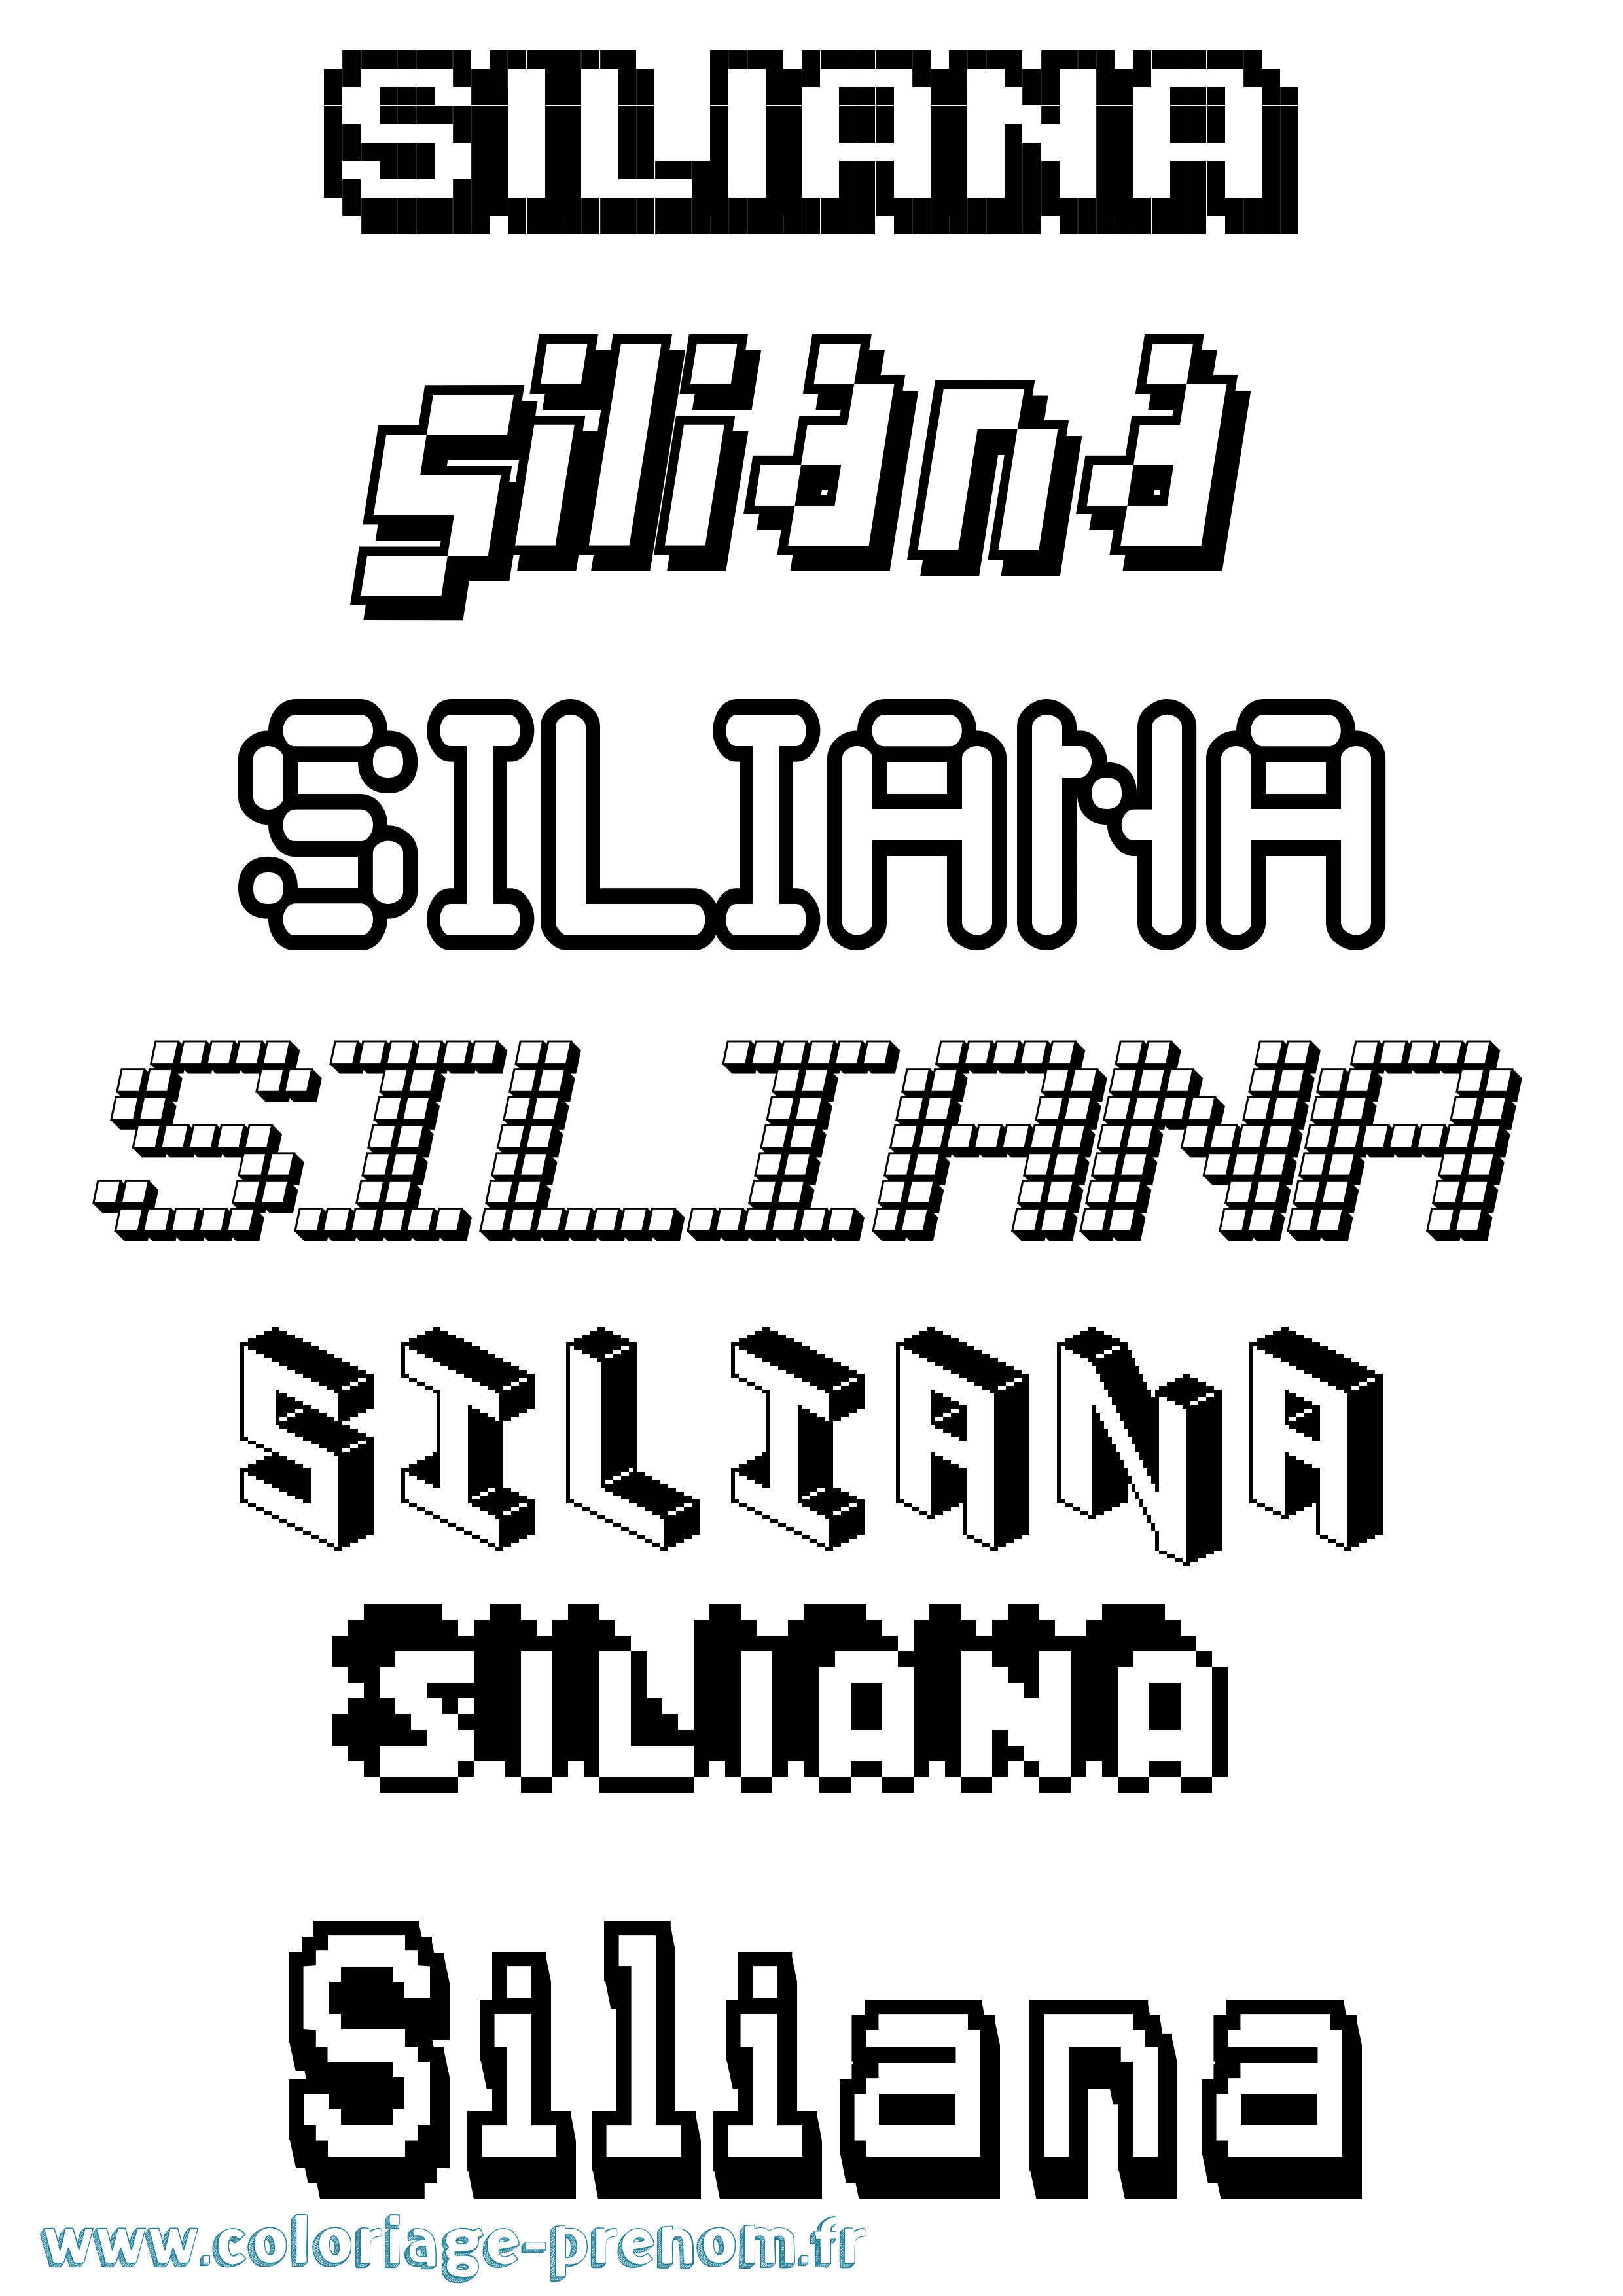 Coloriage prénom Siliana Pixel